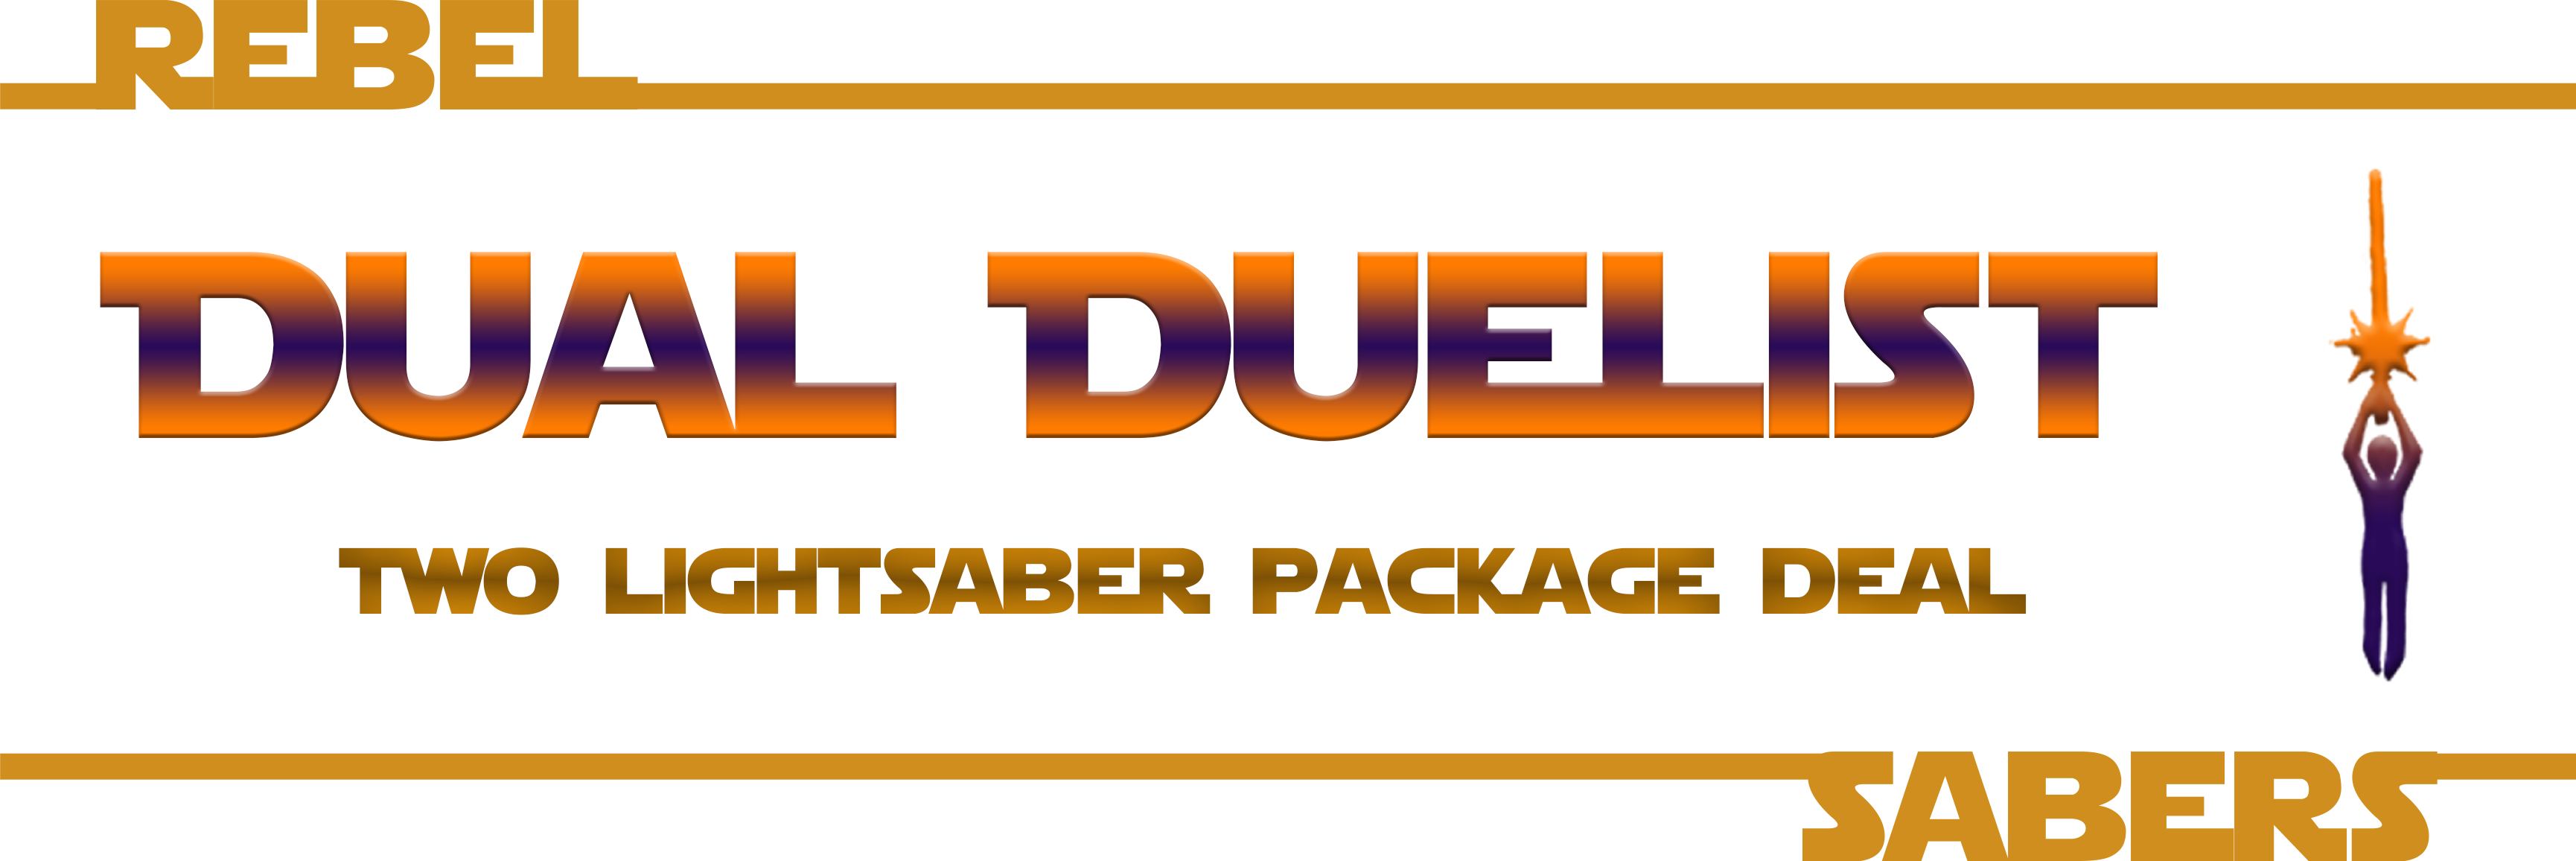 Dual Duelist | 2 Saber Package